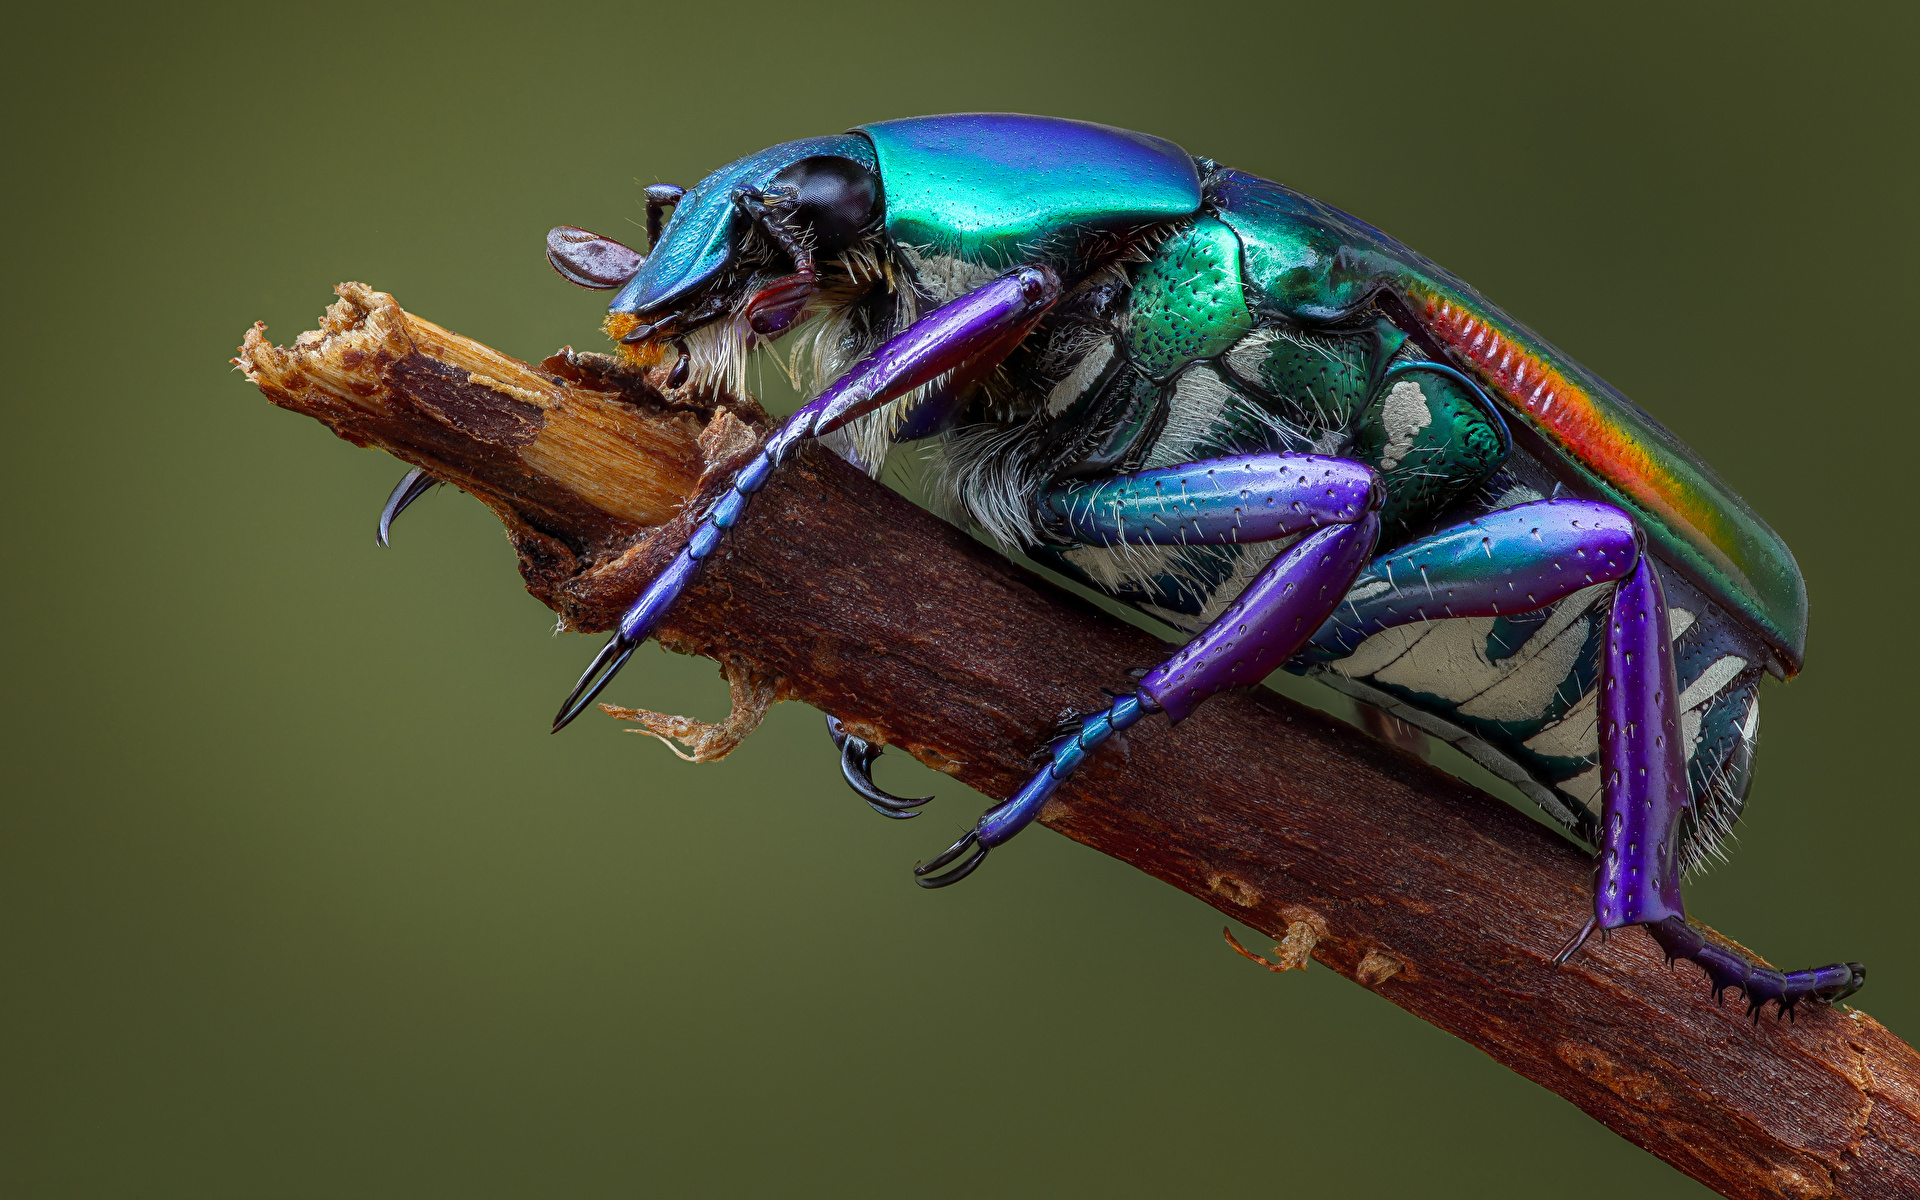 Bilder von Käfer Insekten pygora sanguineomarginata Tiere Großansicht 1920x1200 hautnah ein Tier Nahaufnahme